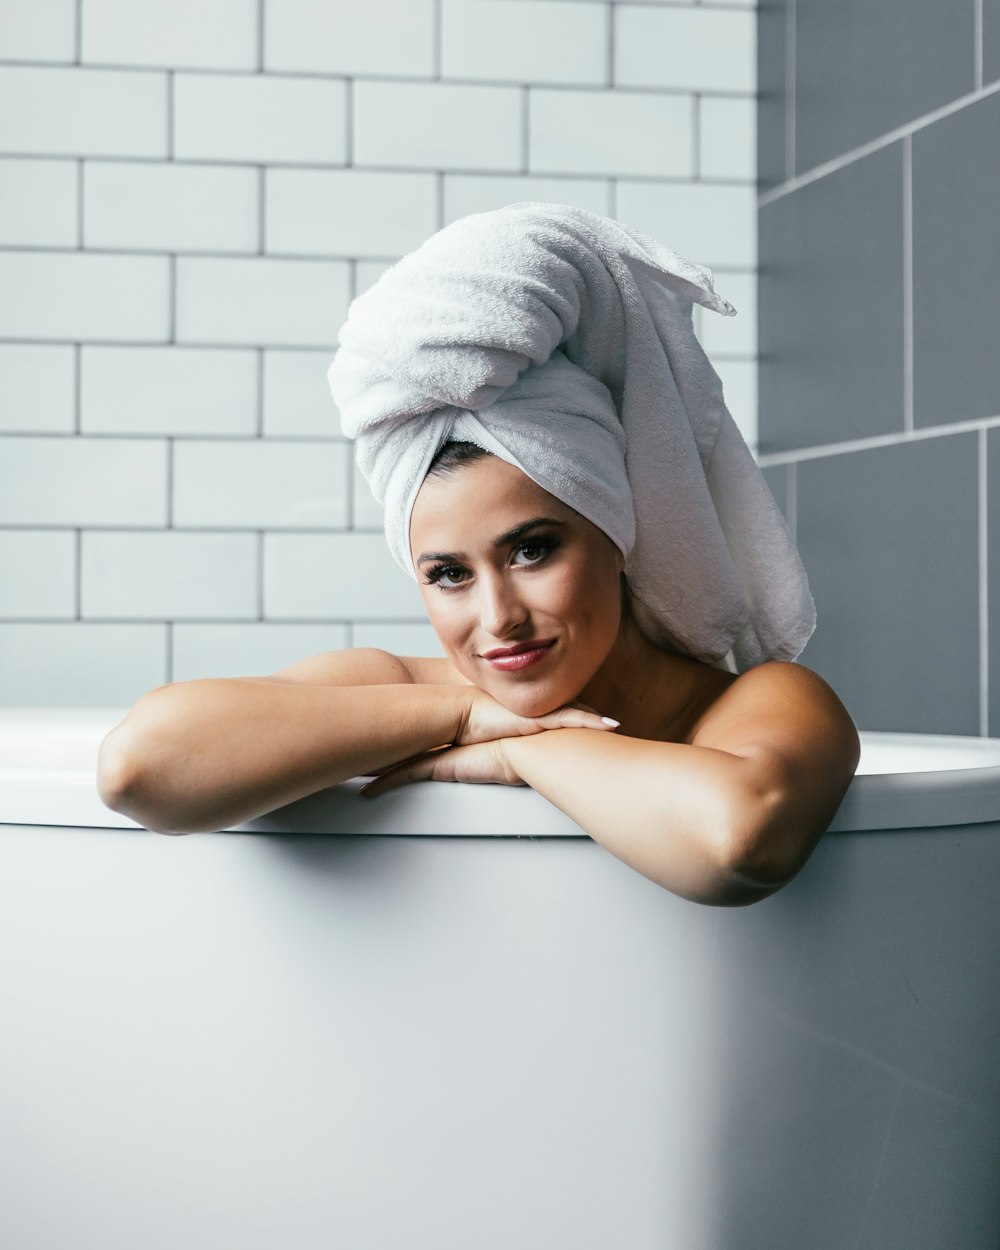 woman inside bathtub